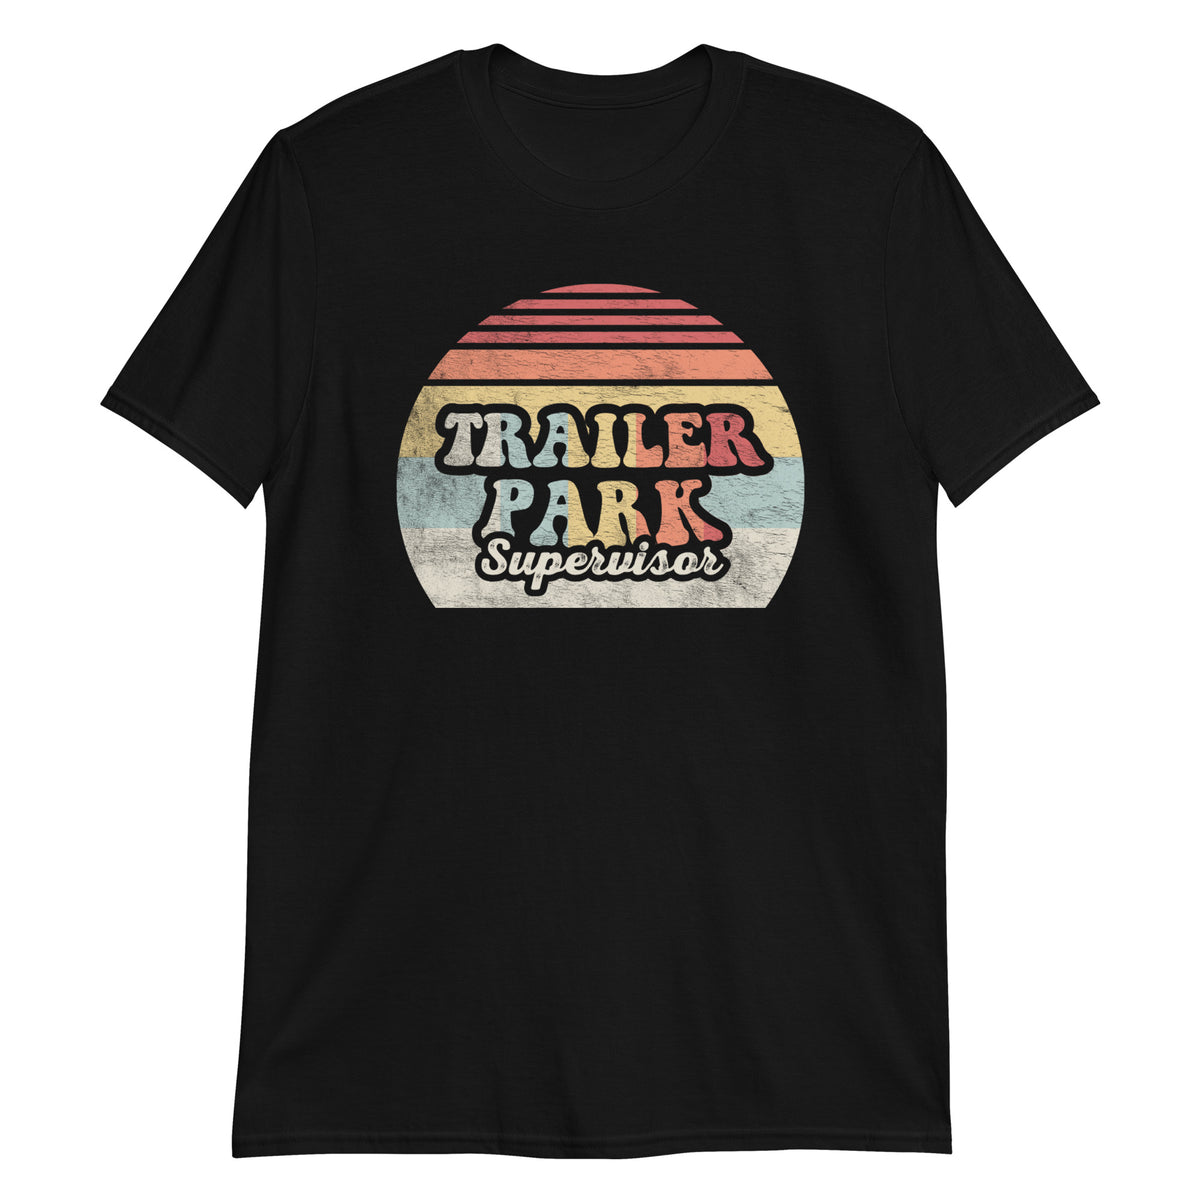 Trailer Park Supervisor T-Shirt